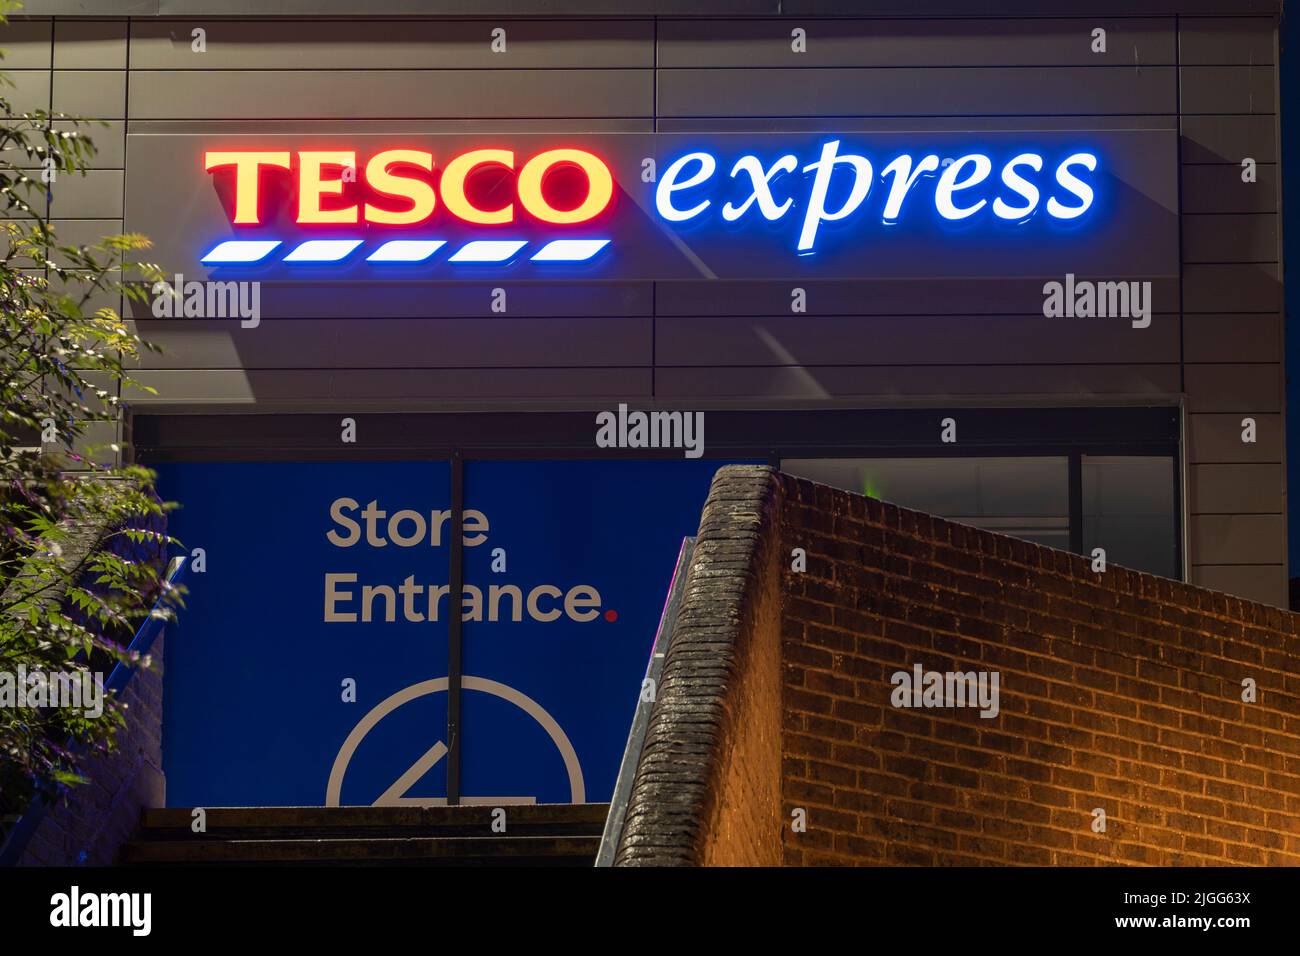 Tesco Express - ein kleiner Supermarkt - Logo und Schild beleuchtet nachts im Einkaufszentrum Malls im Stadtzentrum von Basingstoke. England, Großbritannien Stockfoto